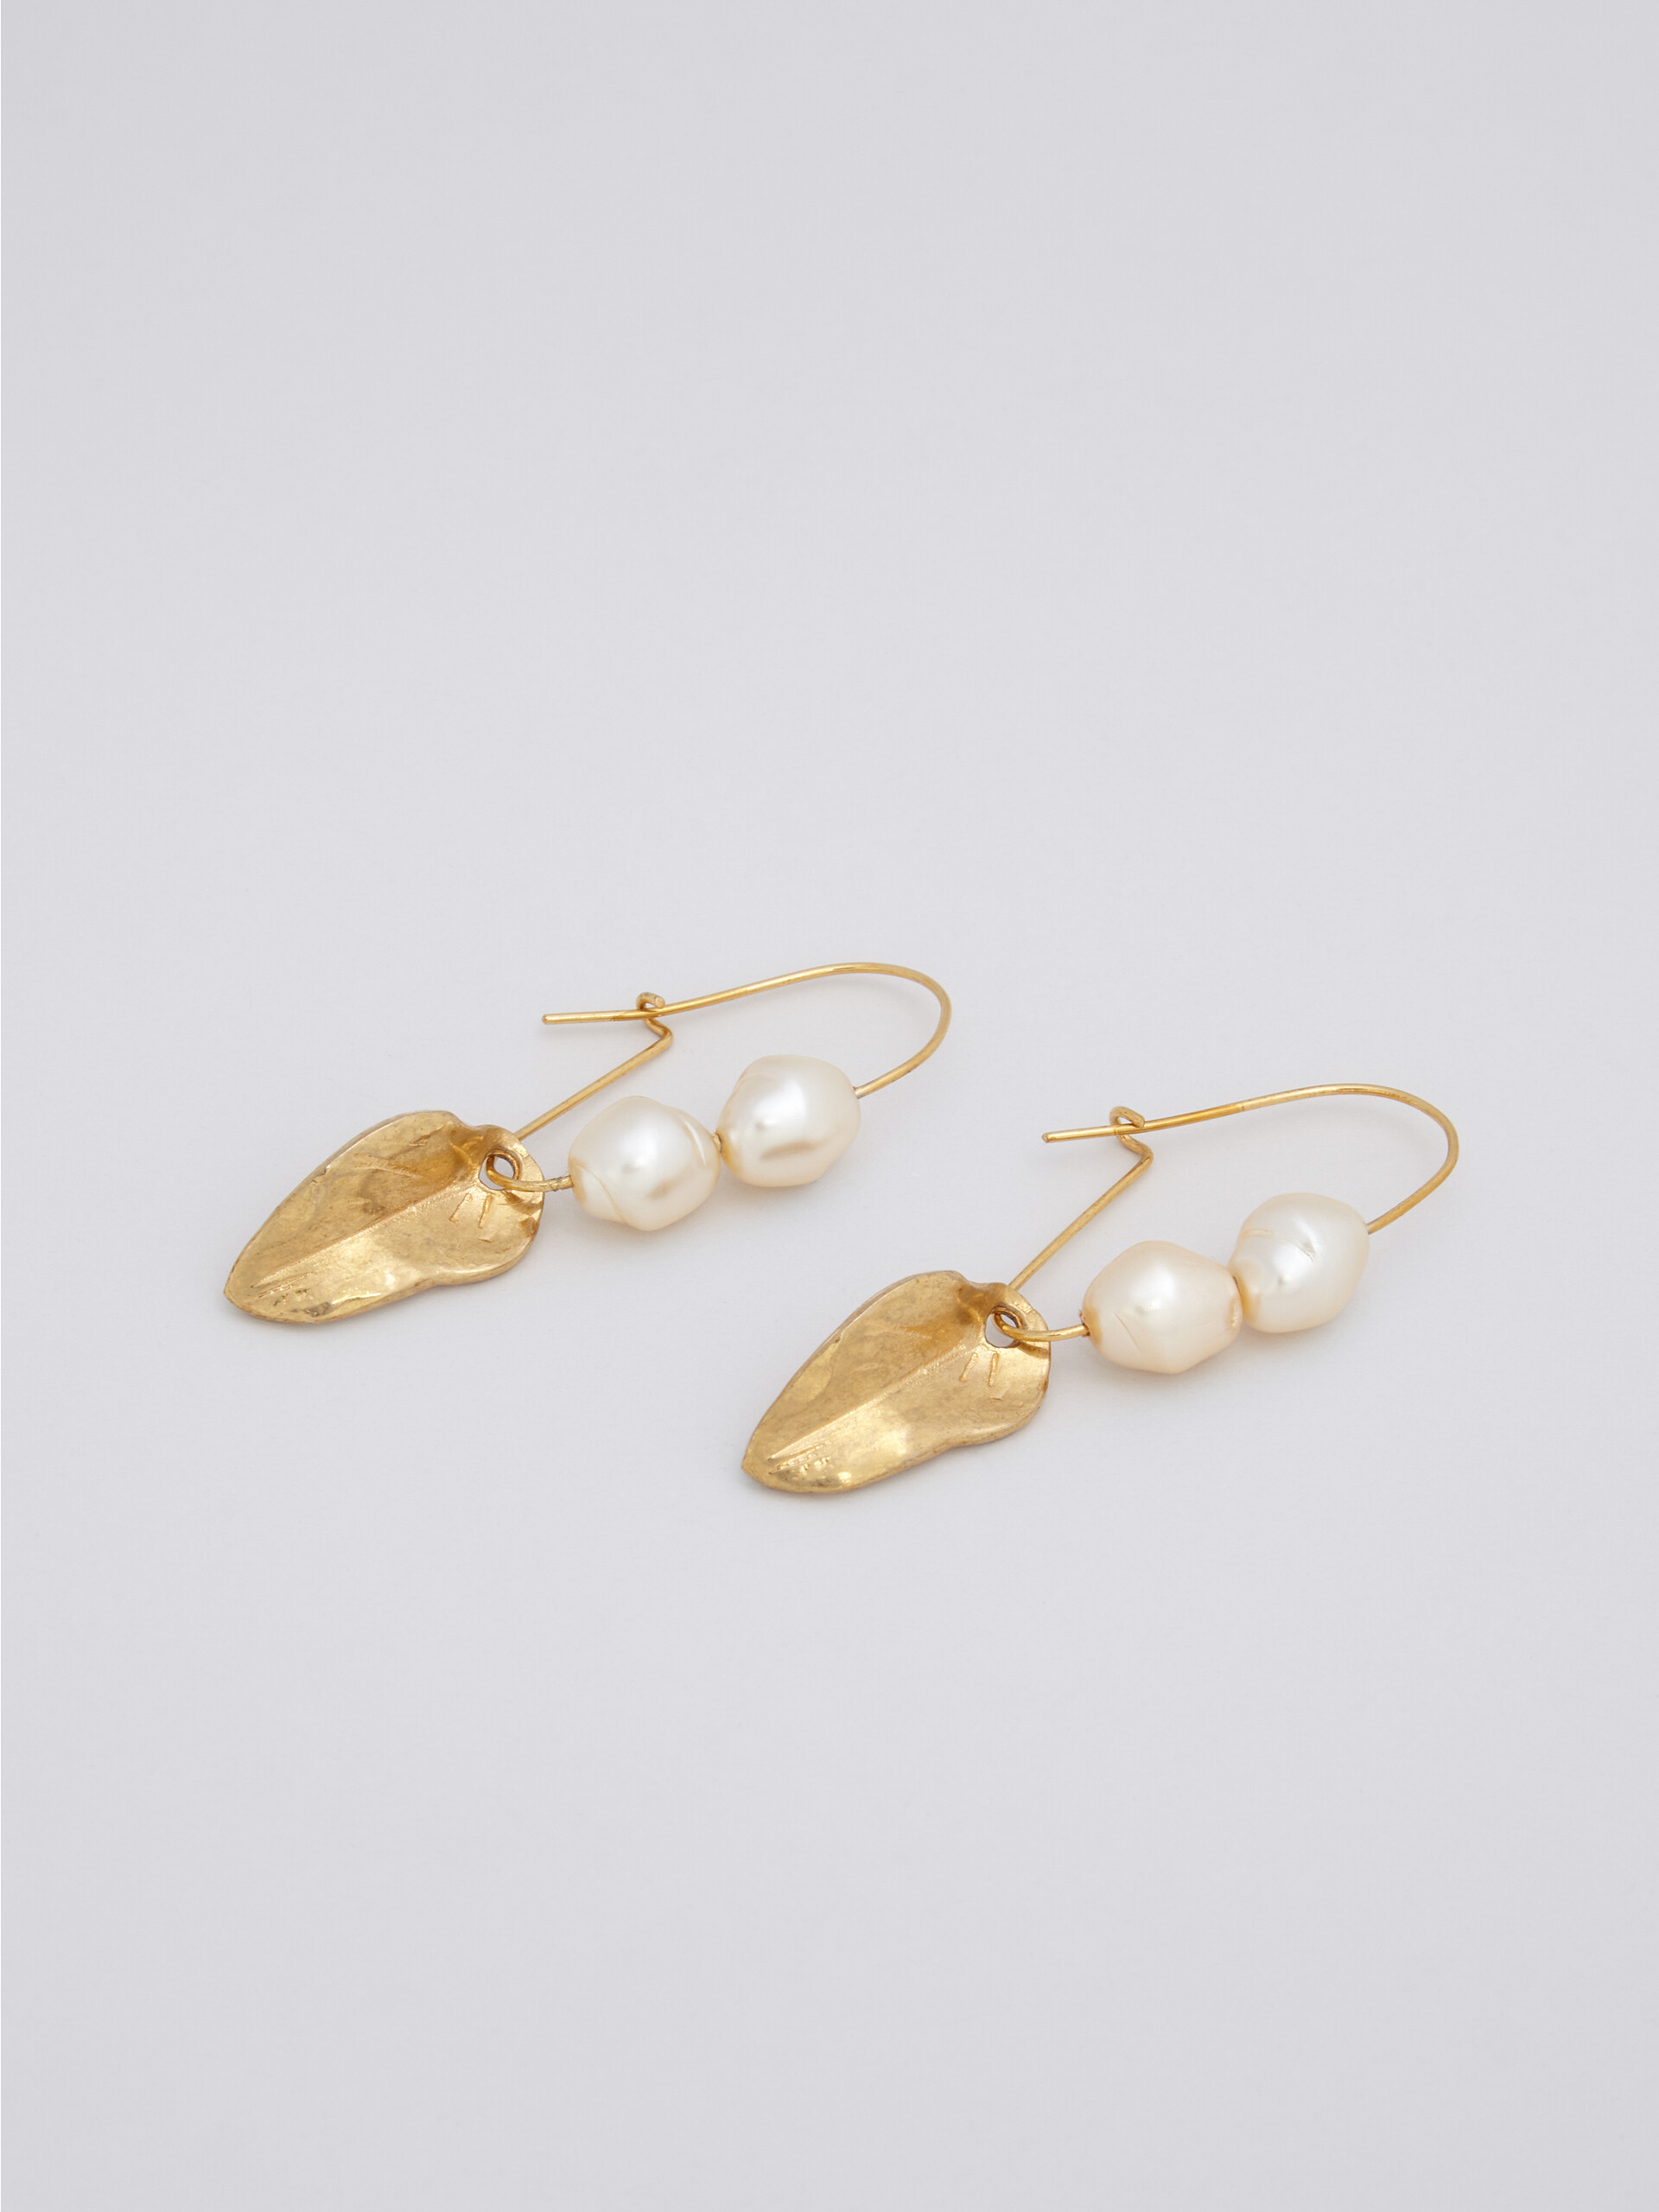 Boucles d'oreilles dormeuses NATURE en métal doré avec perles et feuille - Boucles d’oreilles - Image 3